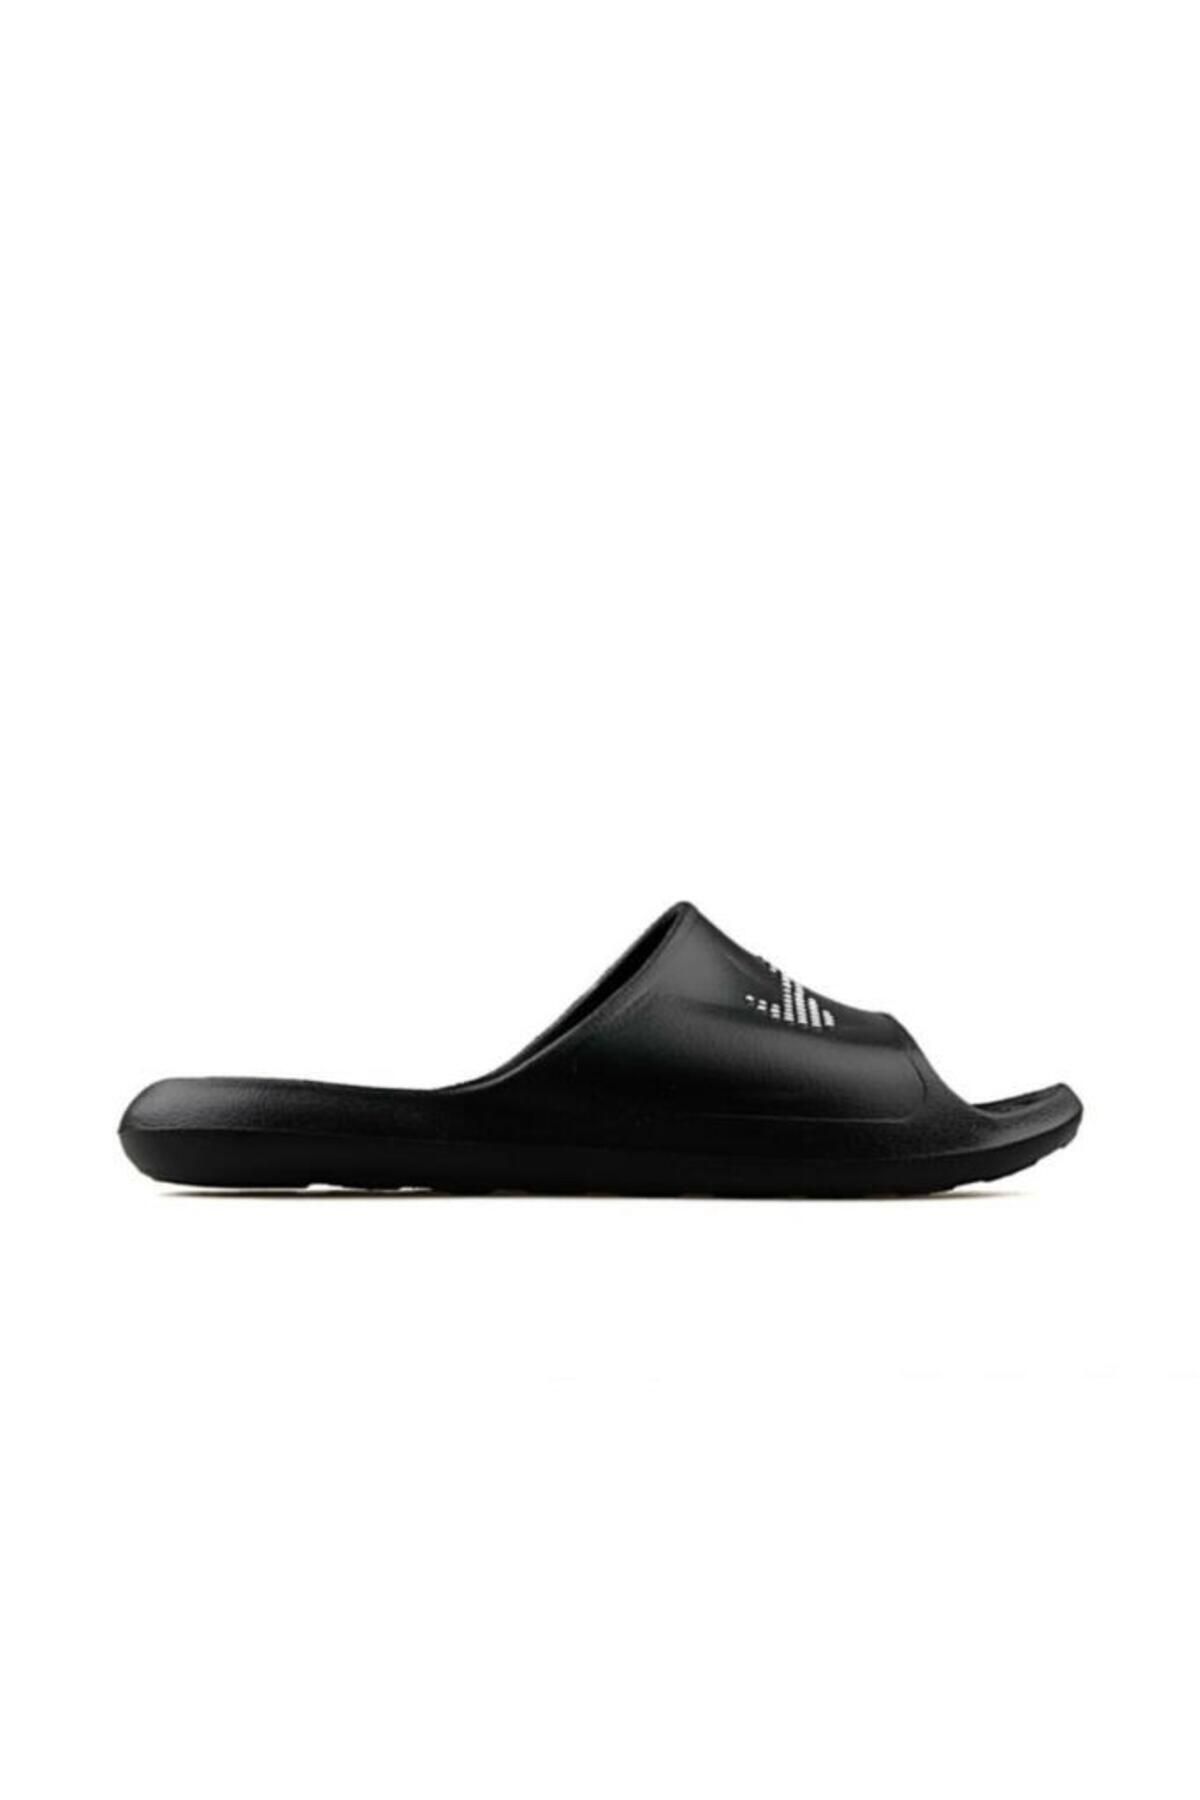 Nike Victori One Erkek Terlik Ayakkabı Cz5478-001-siyah